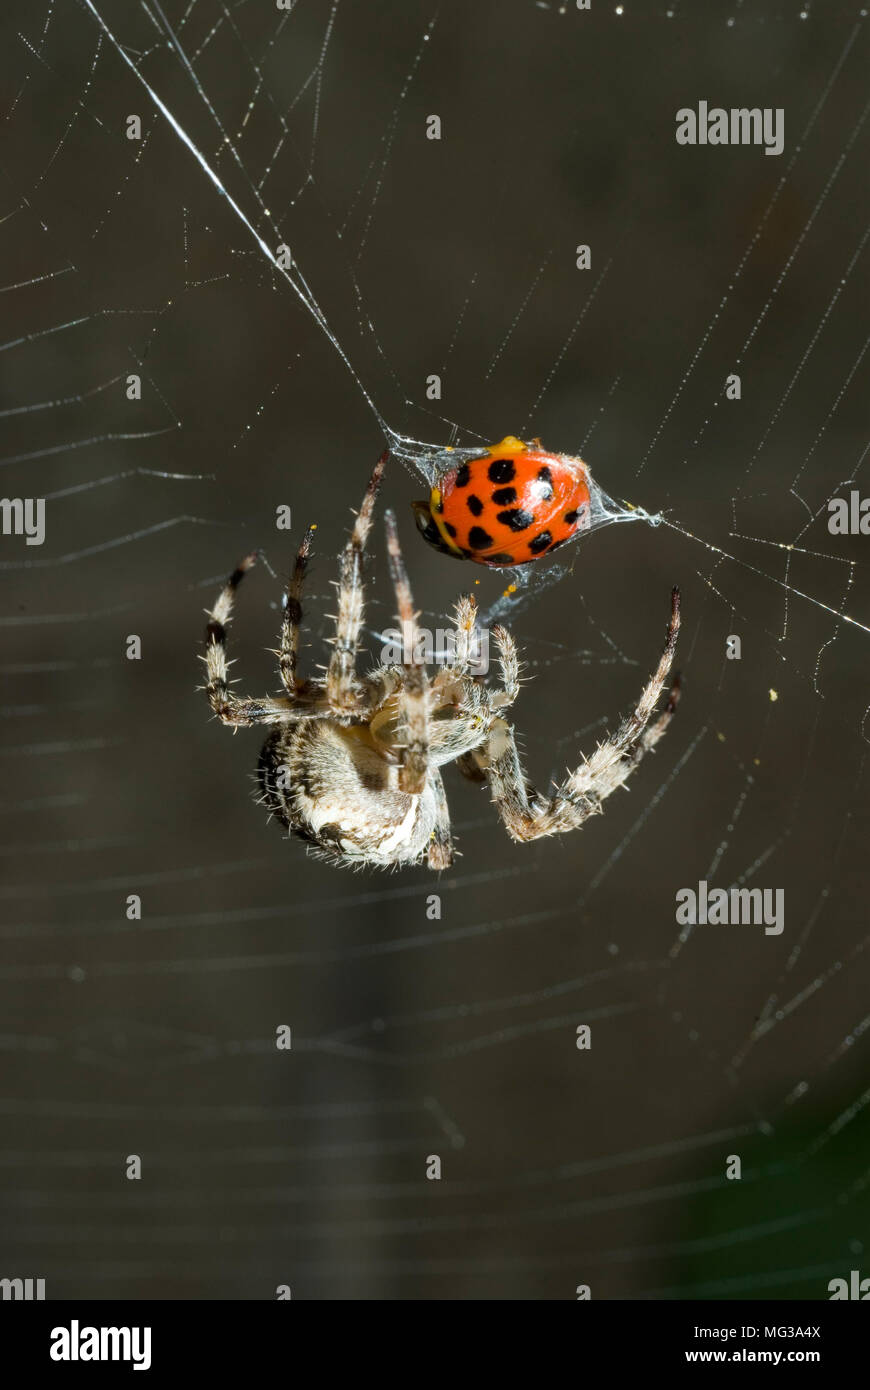 Garden Spider with Prey Stock Photo